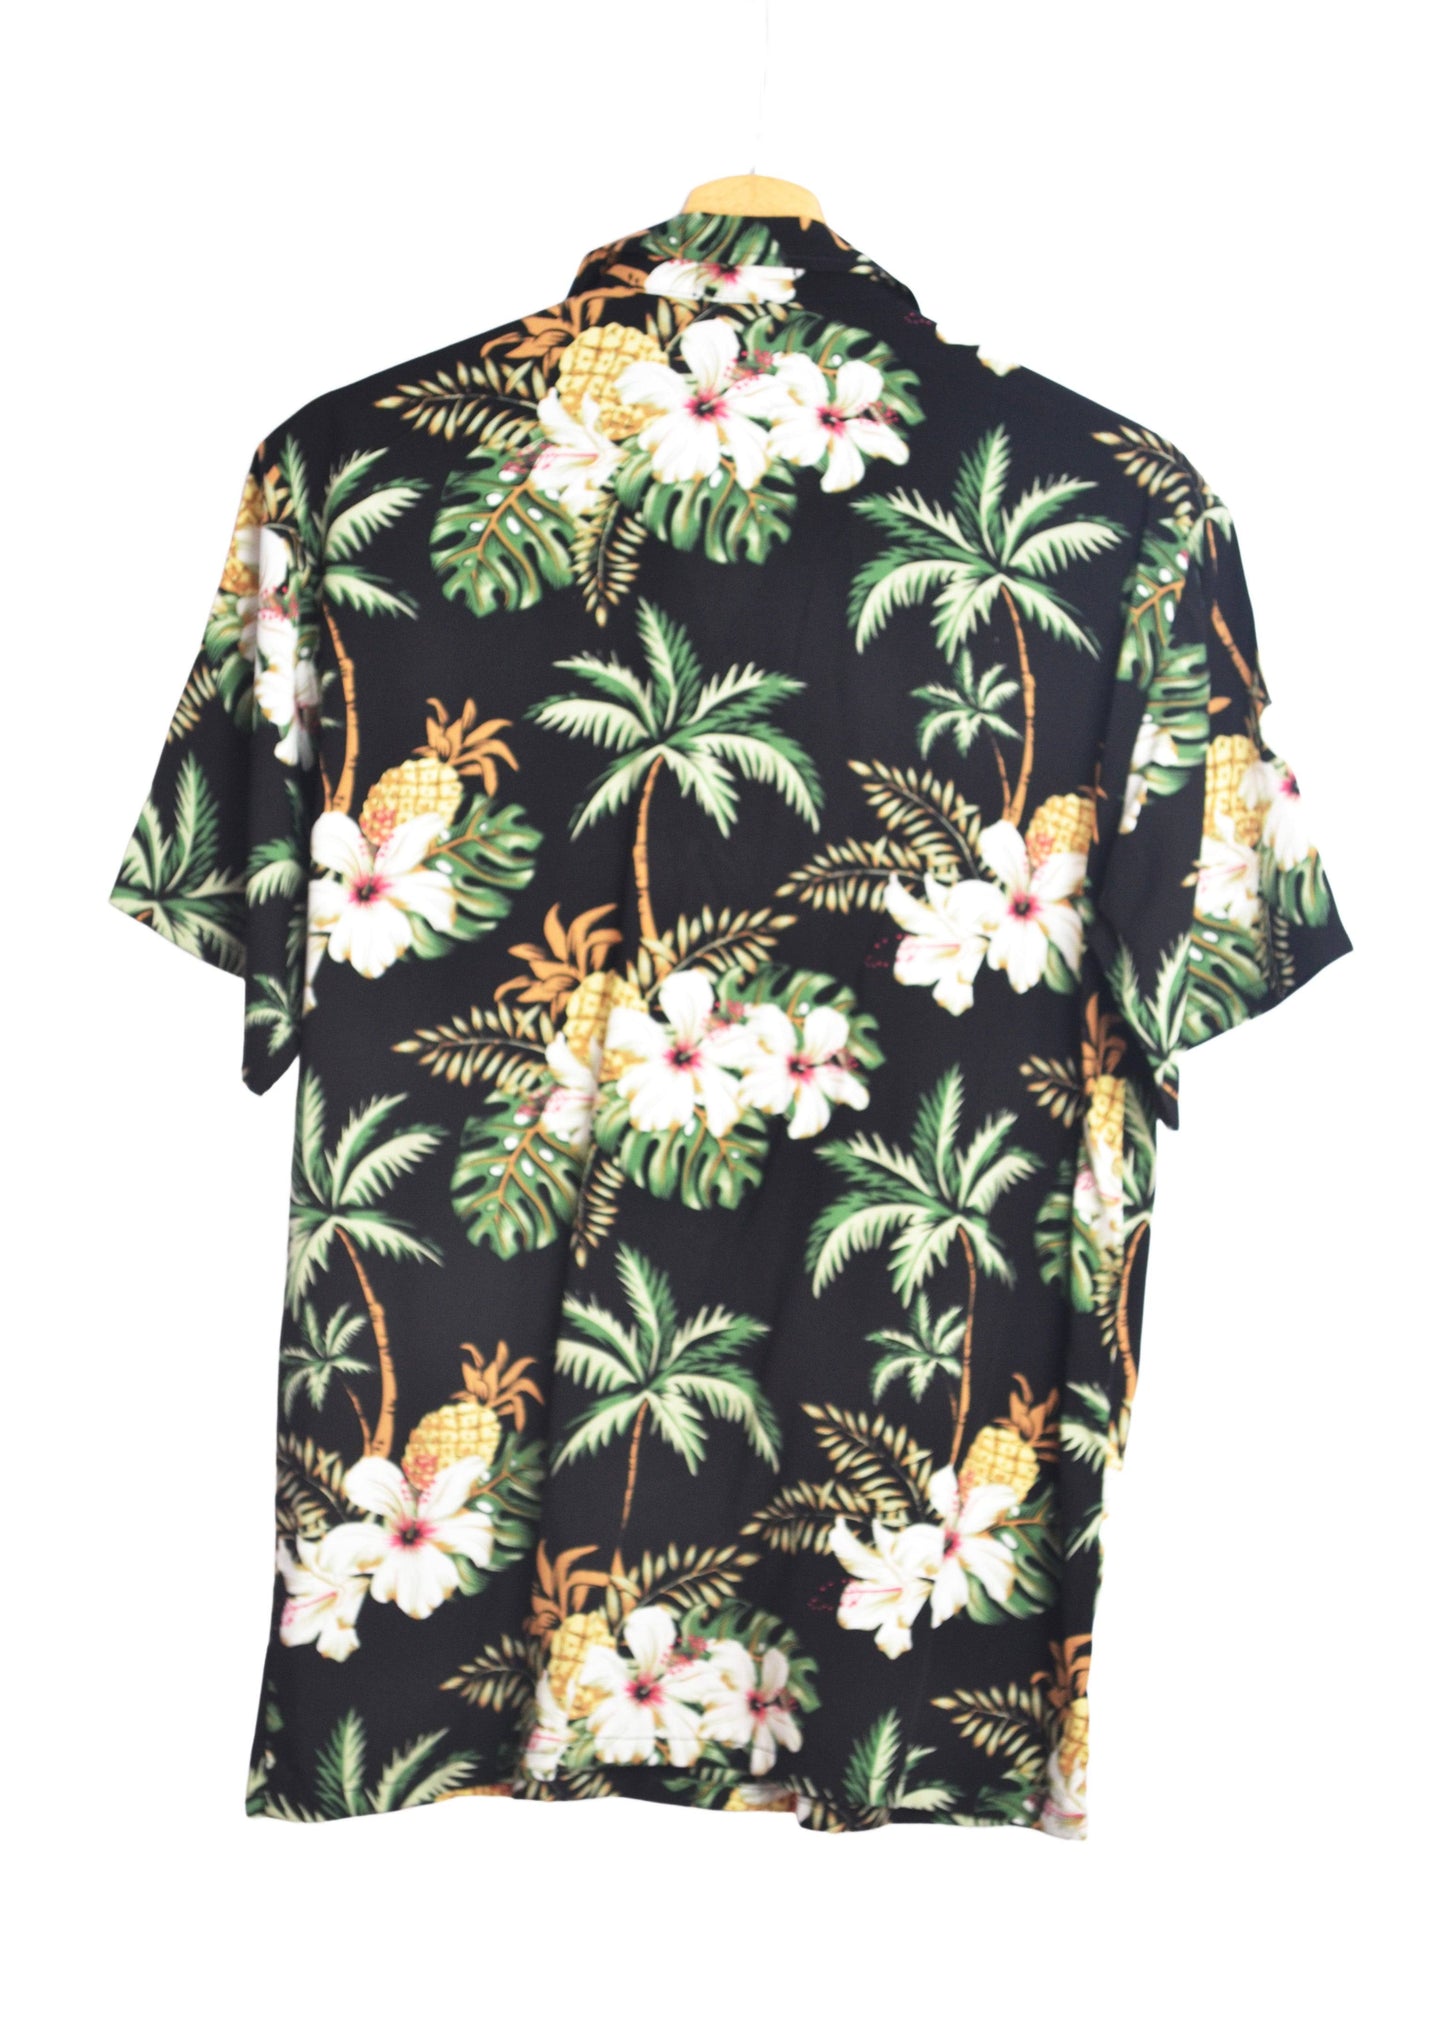 Vue dos chemise hawaienne noire motifs fleurs et ananas - GL BOUTIK